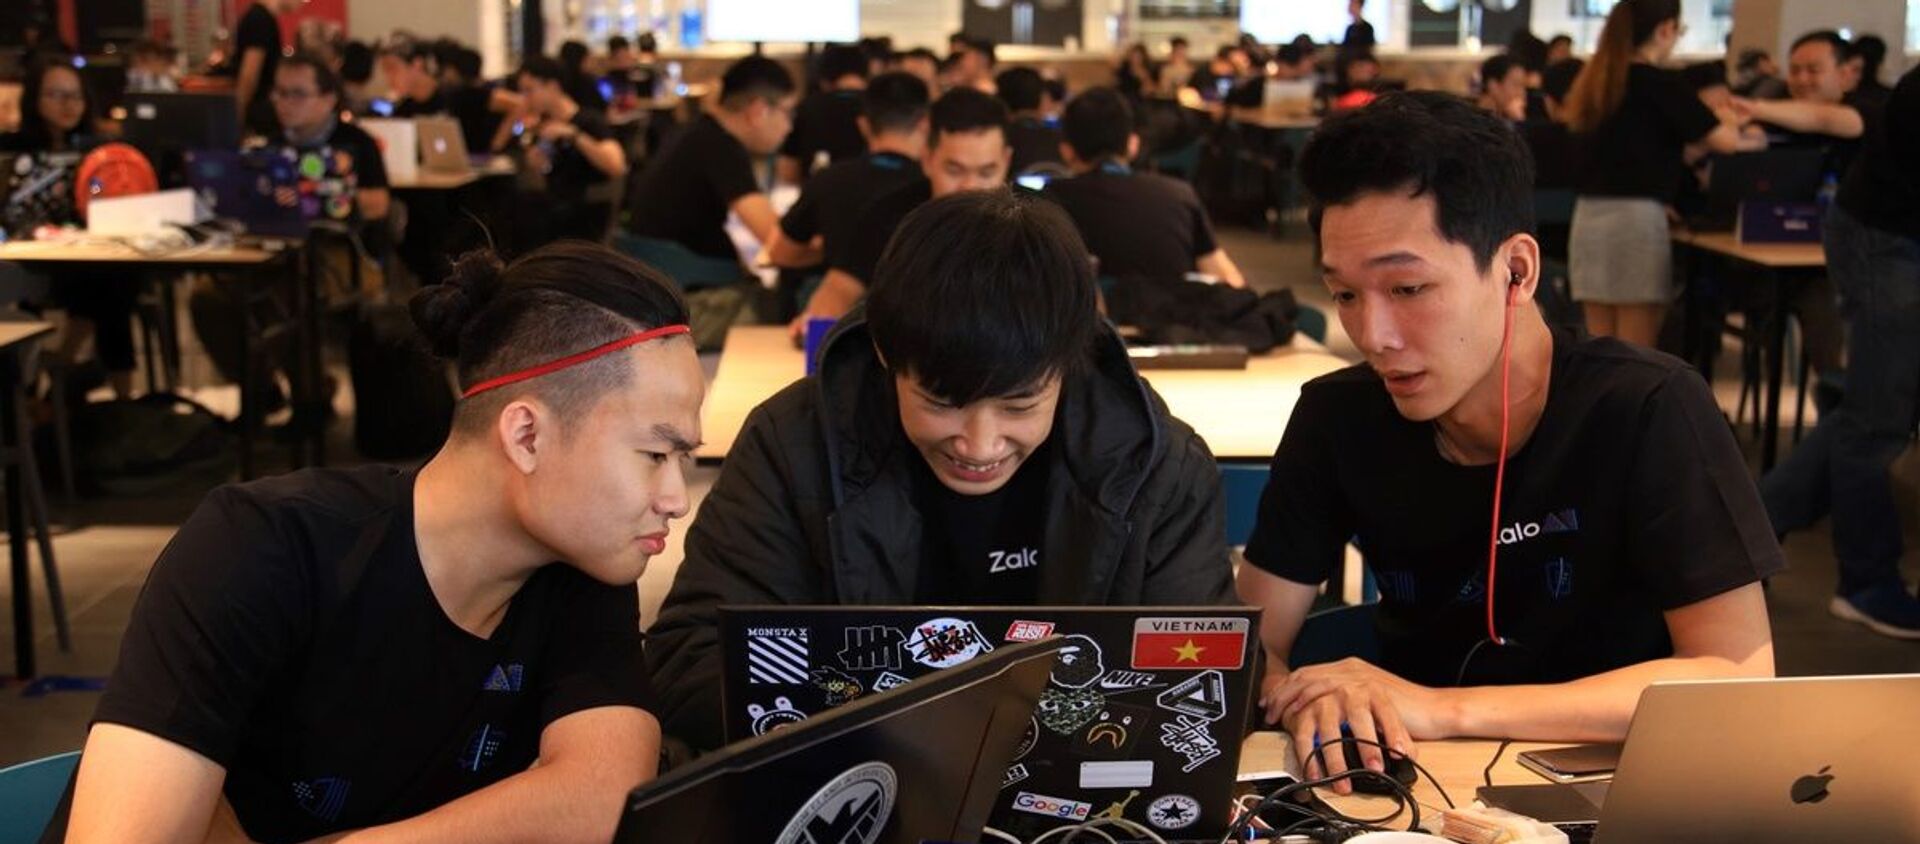 Hơn 160 kỹ sư đã tham gia Zalo Hackathon để giải quyết bài toán nhận diện hình ảnh. - Sputnik Việt Nam, 1920, 19.12.2019